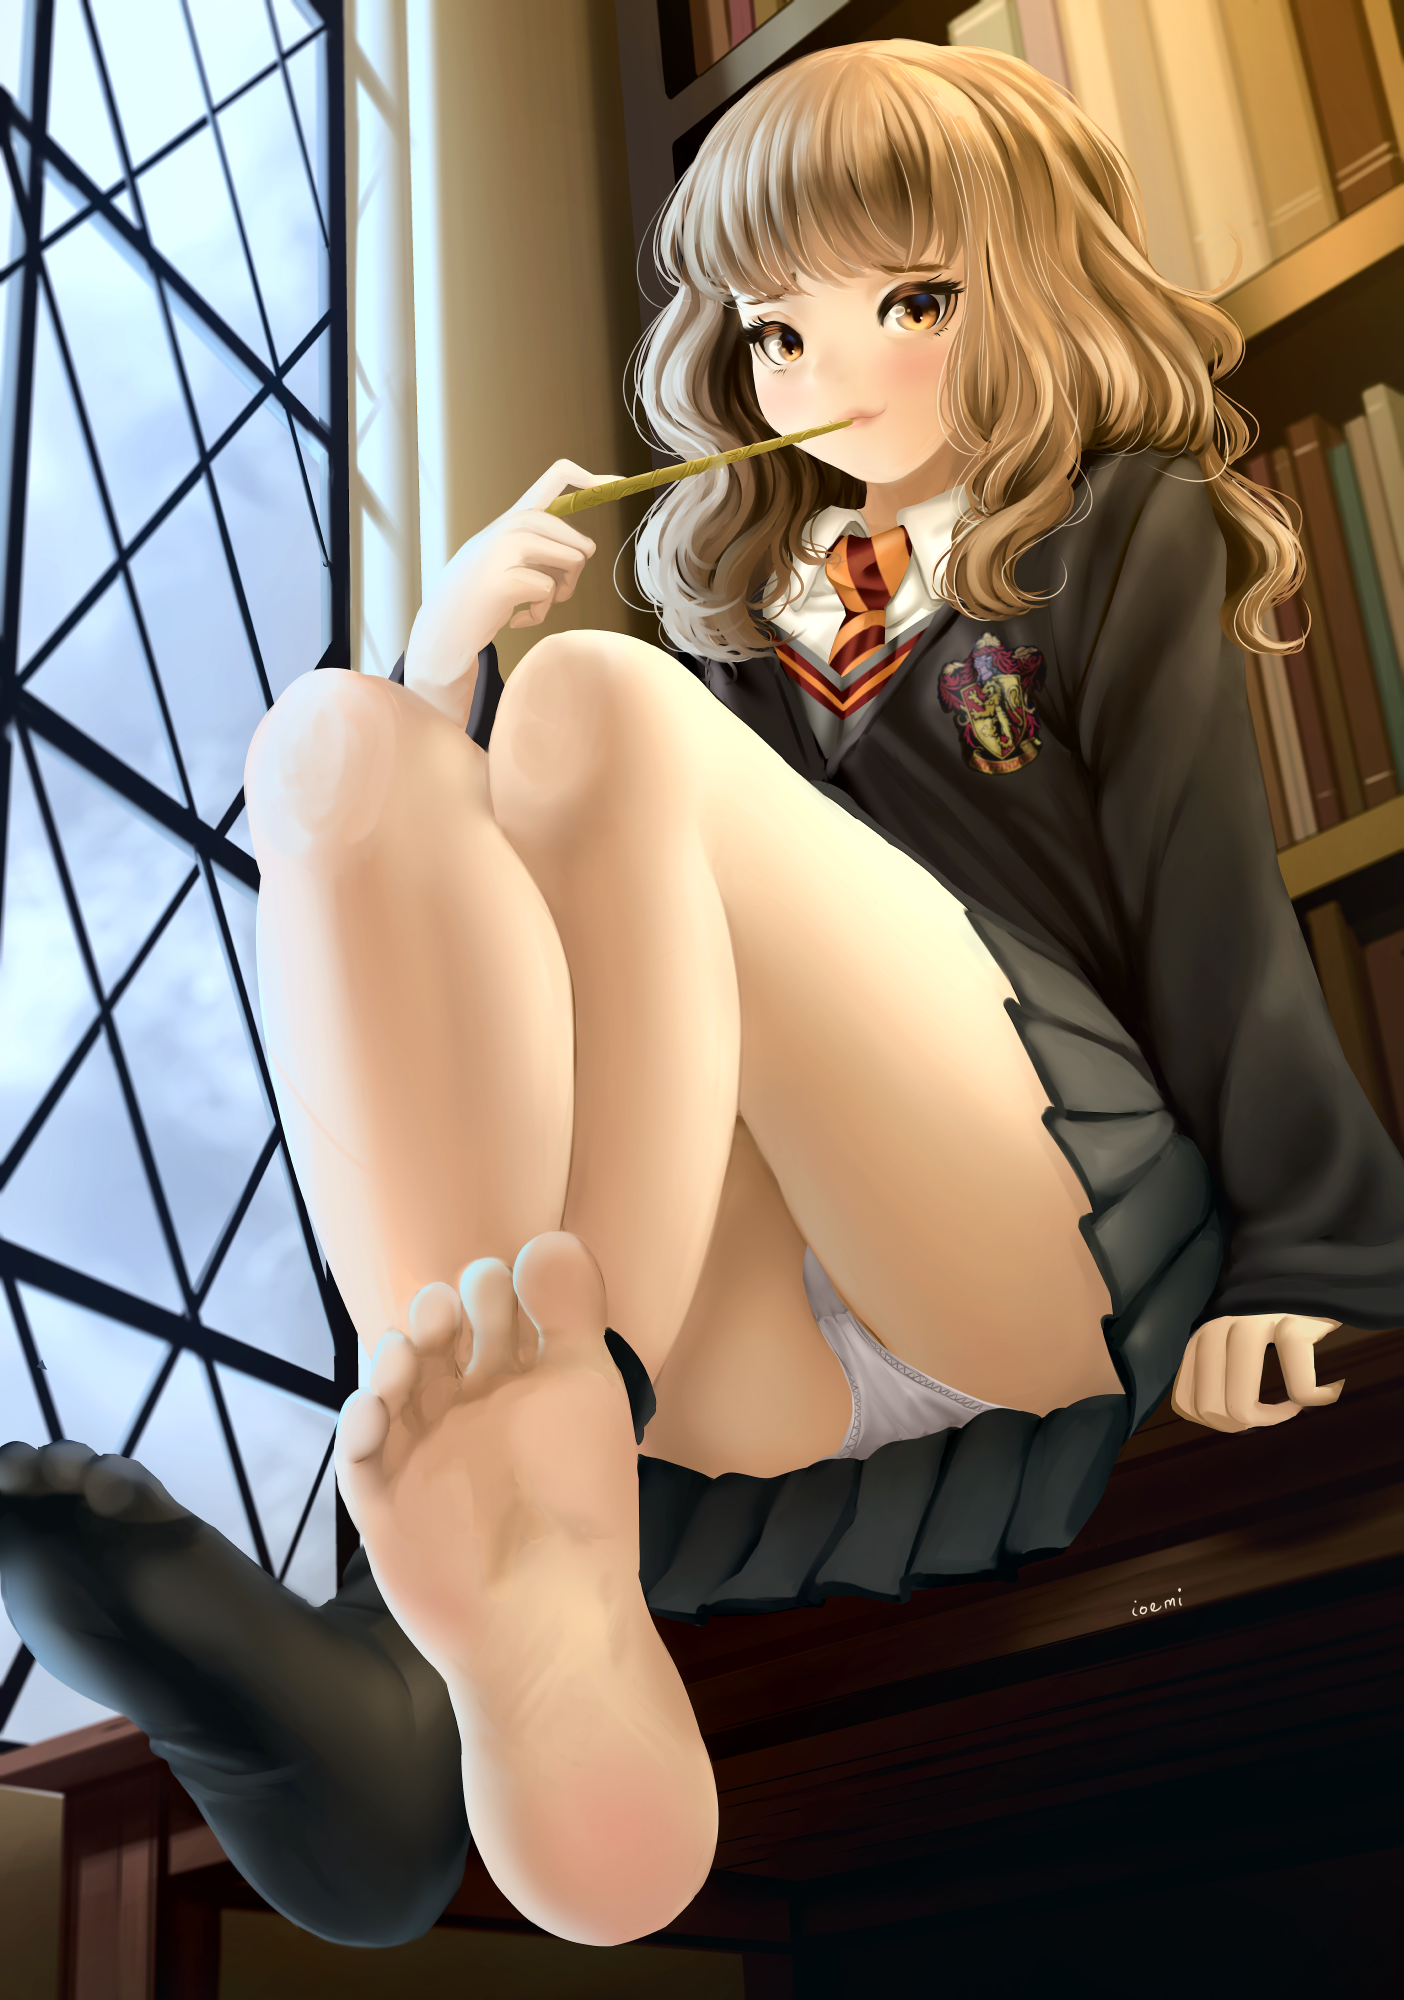 Anime 1404x2000 anime anime girls digital art artwork 2D portrait display Harry Potter Hermione Granger feet foot fetishism